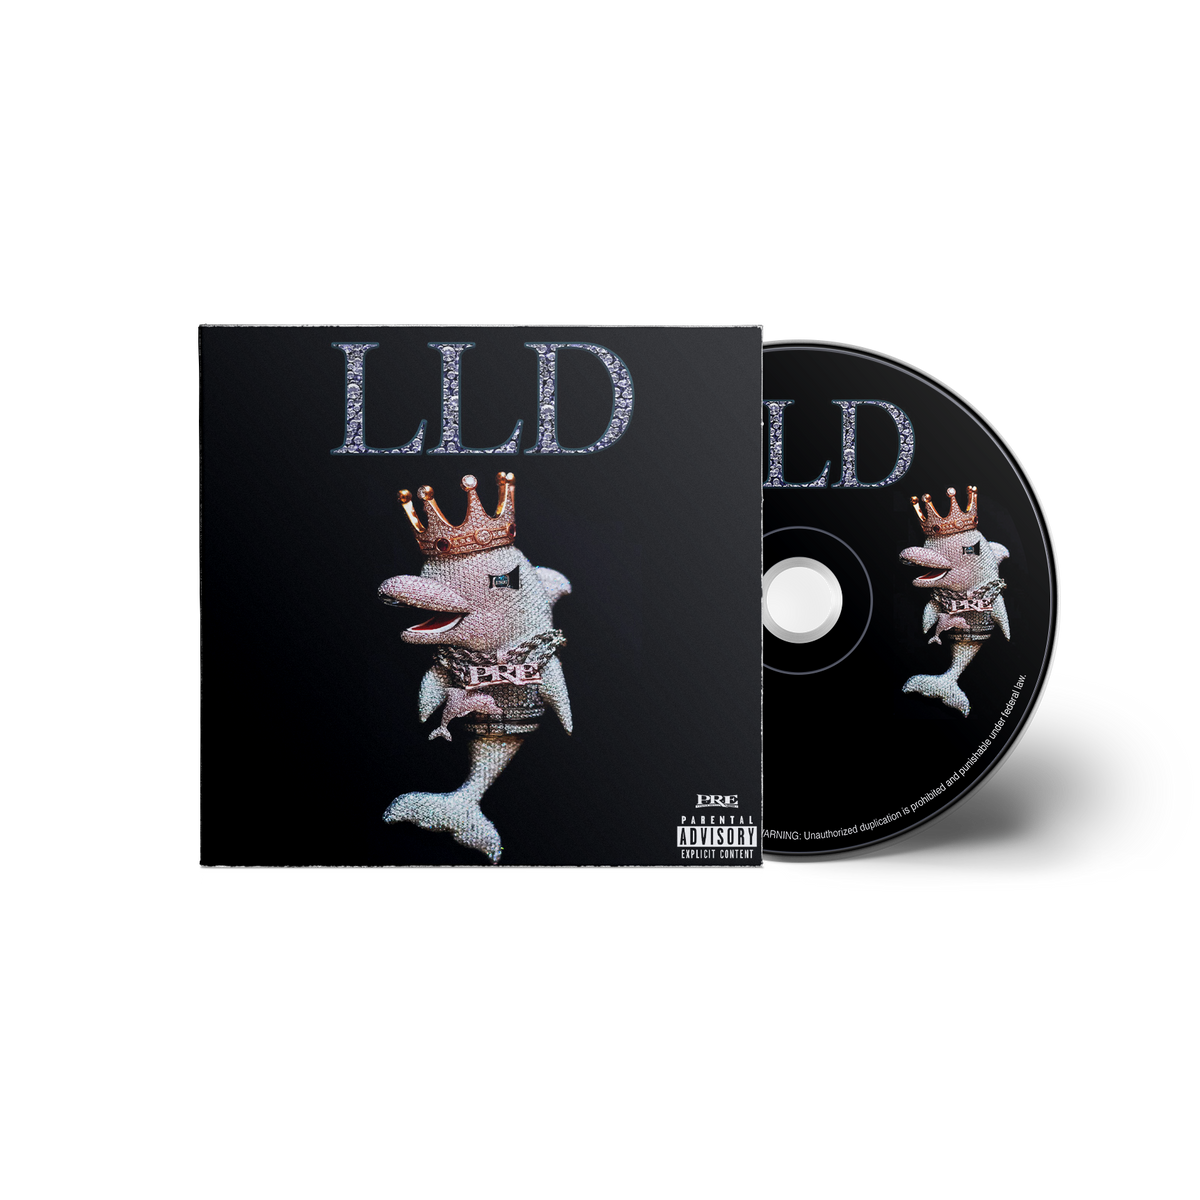 LLD - CD